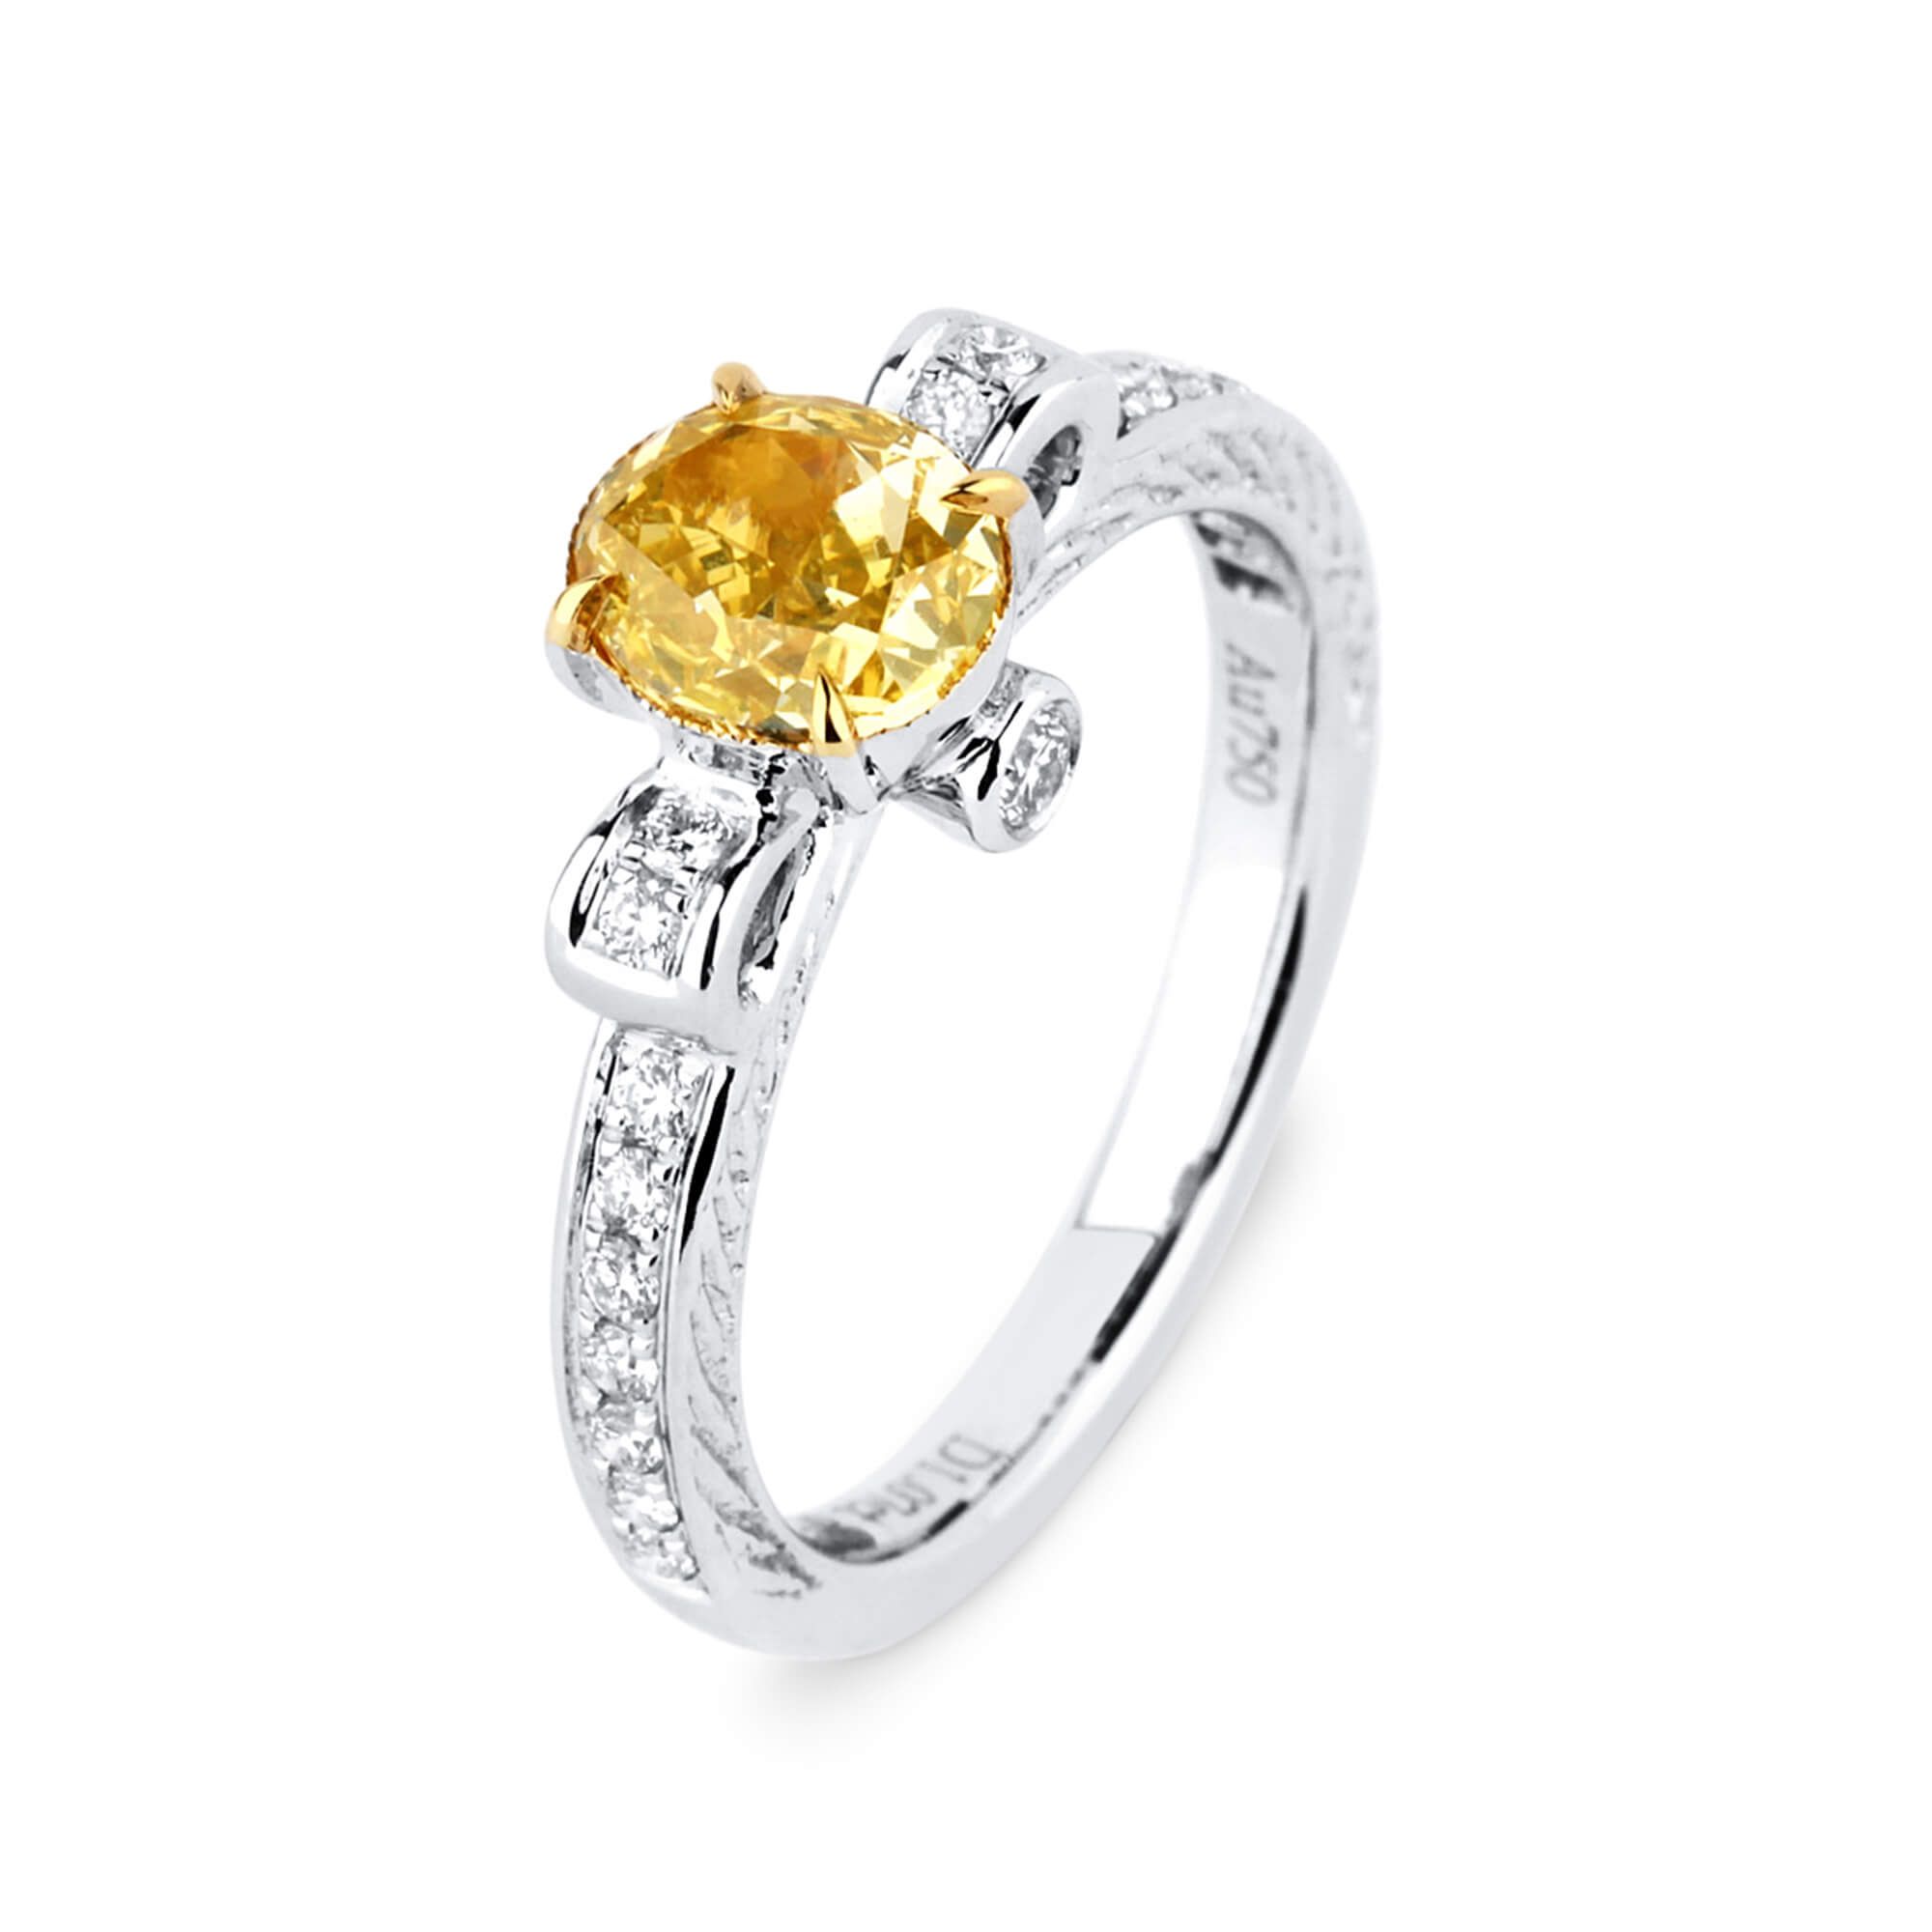 浓 黄色 钻石 戒指, 1.07 重量 (1.31 克拉 总重), 椭圆型 形状, GIA 认证, 2176006642